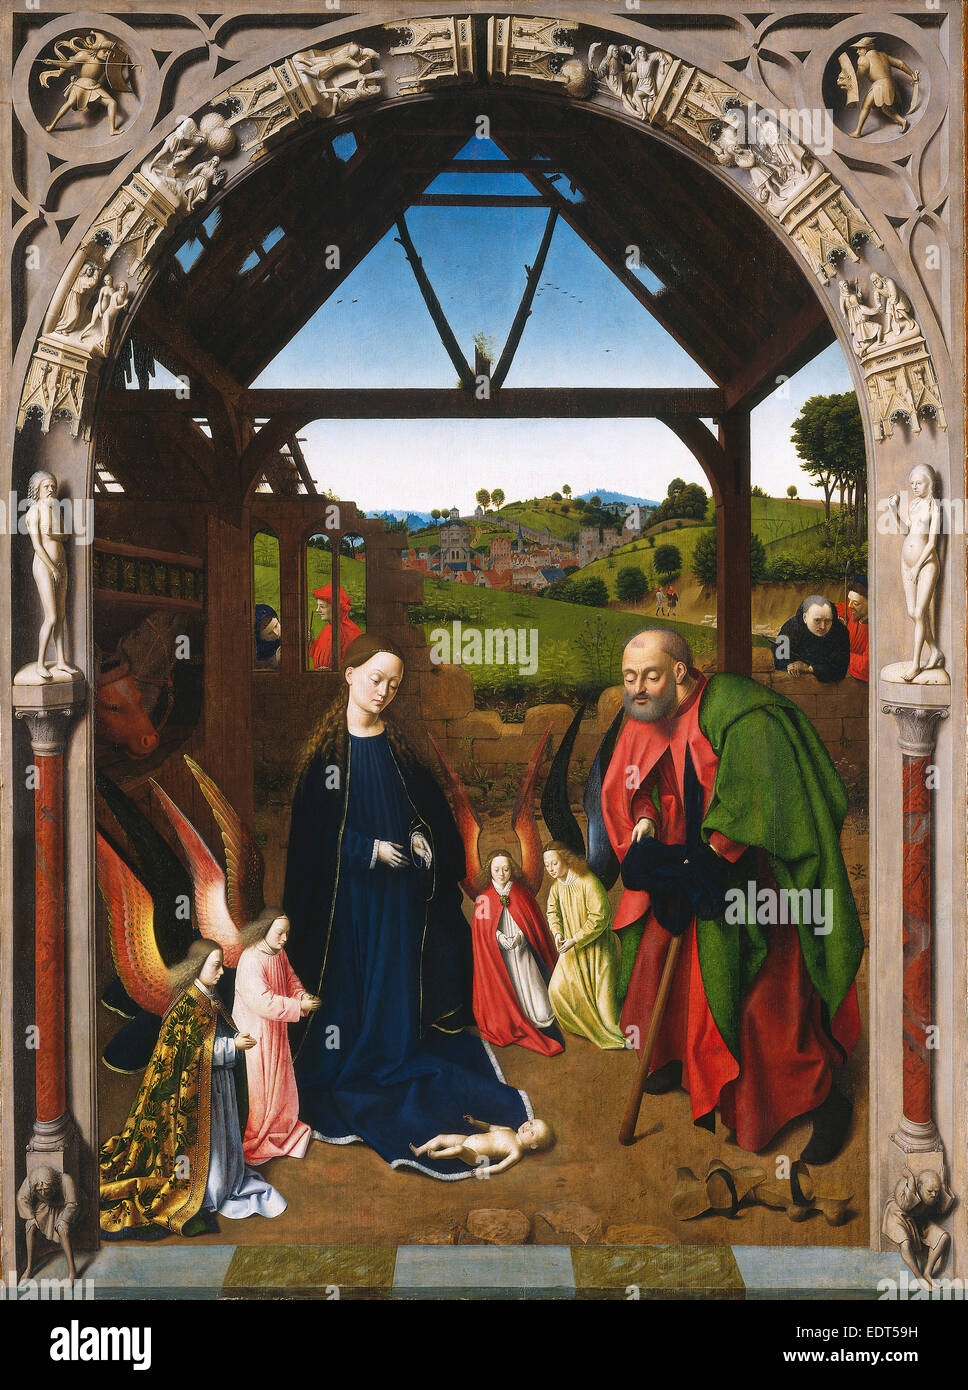 Petrus Christus, la Nativité, active 1444-1475-1476, Russisch, ch. 1450, huile sur panneau Banque D'Images